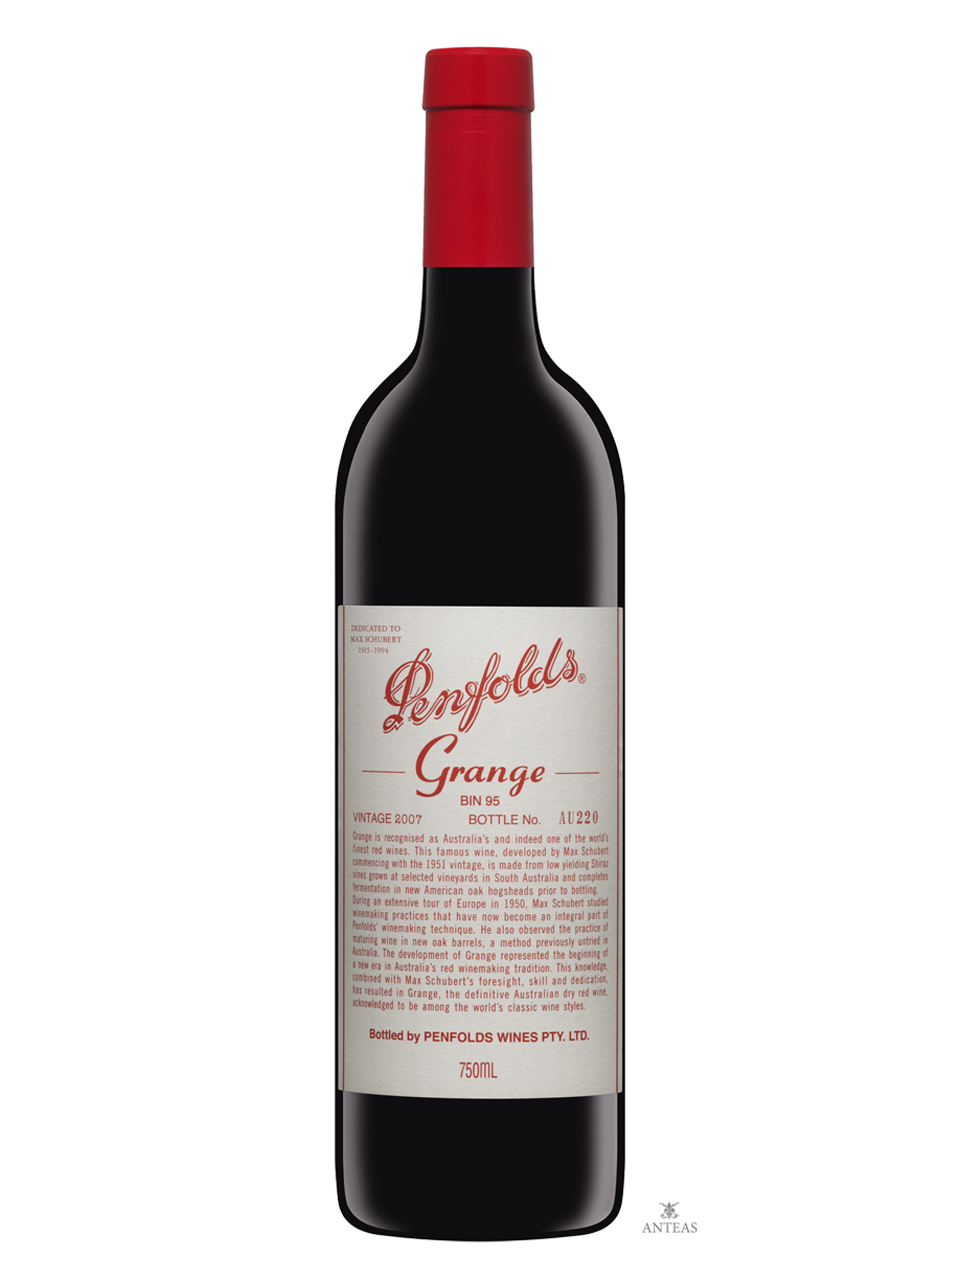 Penfolds Wines – Grange Bin 95 2002